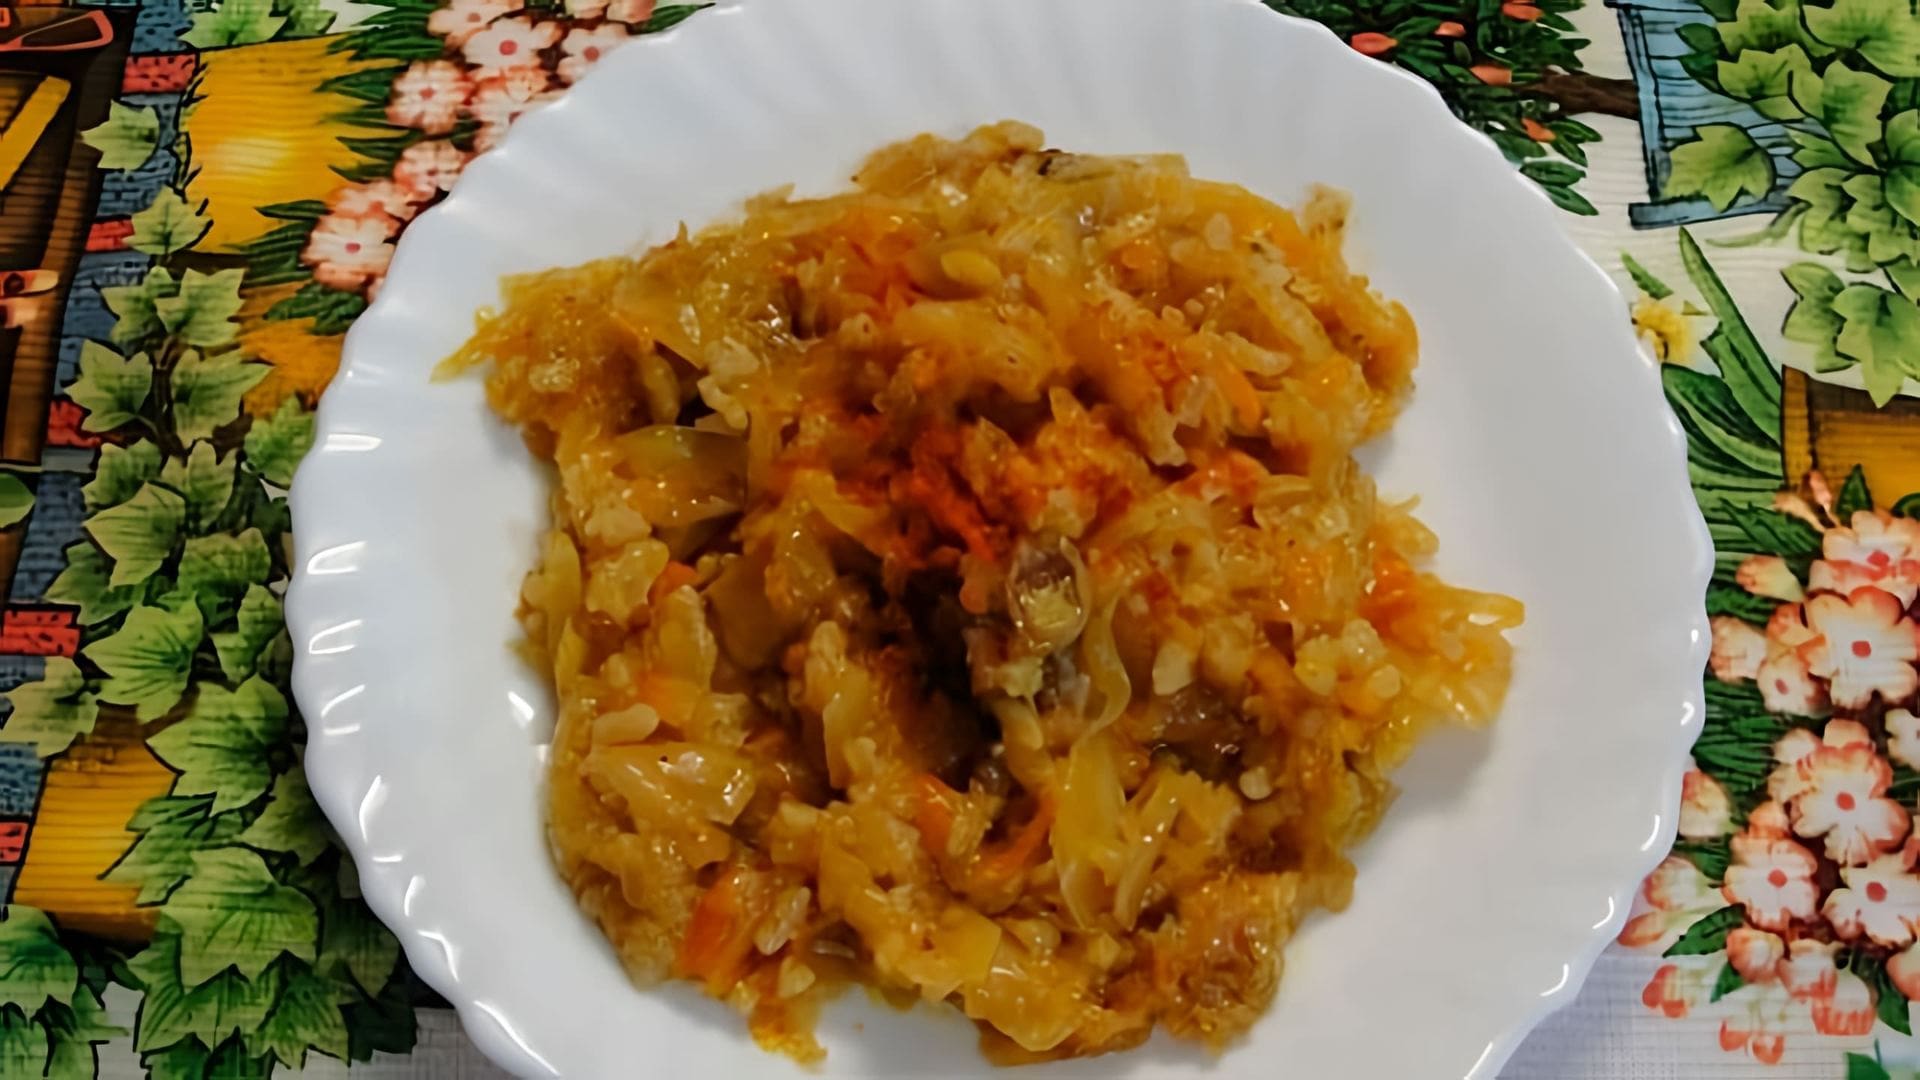 В этом видео демонстрируется процесс приготовления бигуса - польского блюда из квашеной капусты, свежей капусты, мяса, риса, томатной пасты и специй